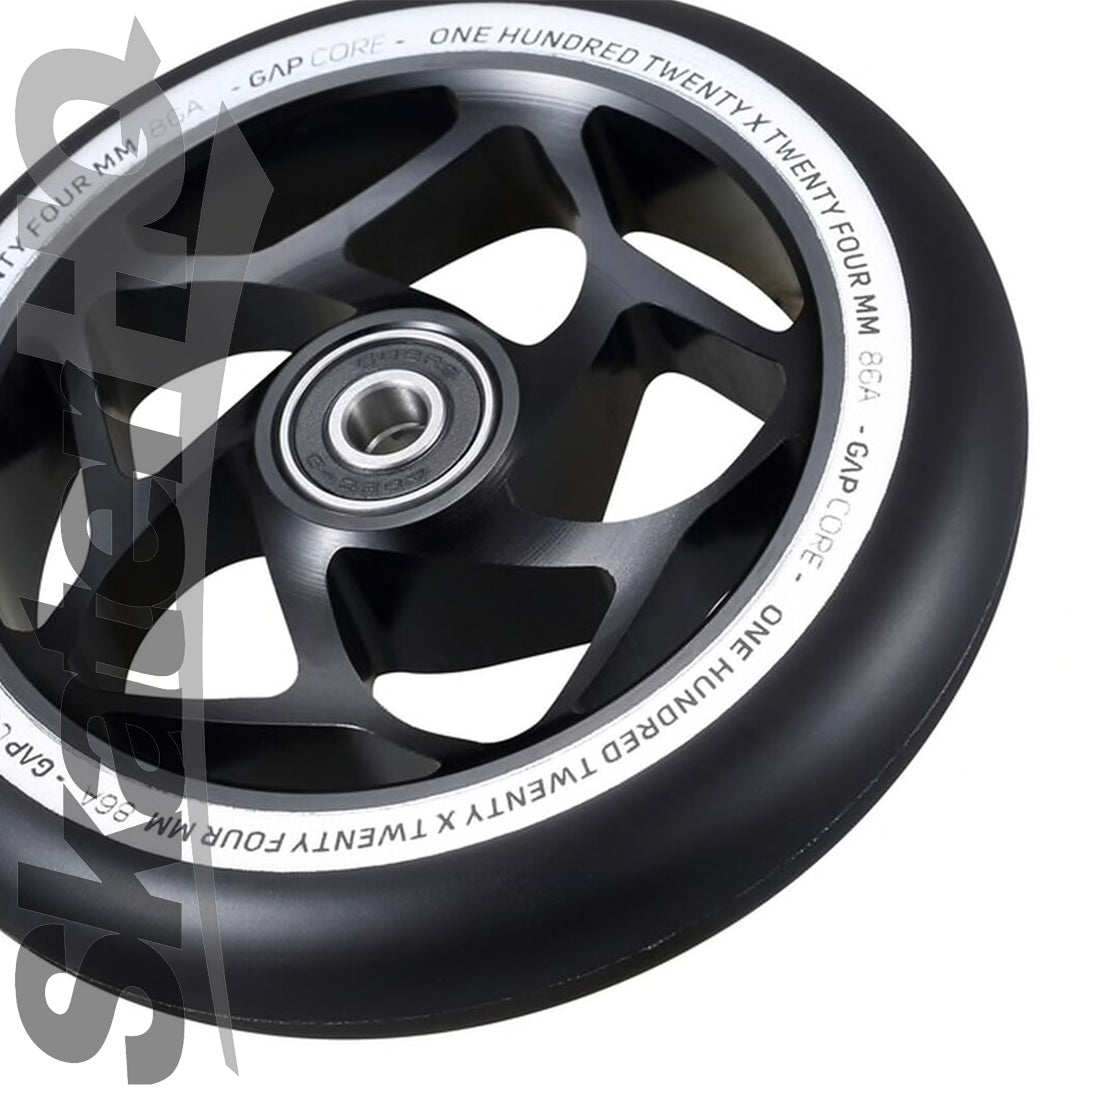 Envy Gap Core 120mm Wheel - Black Scooter Wheels